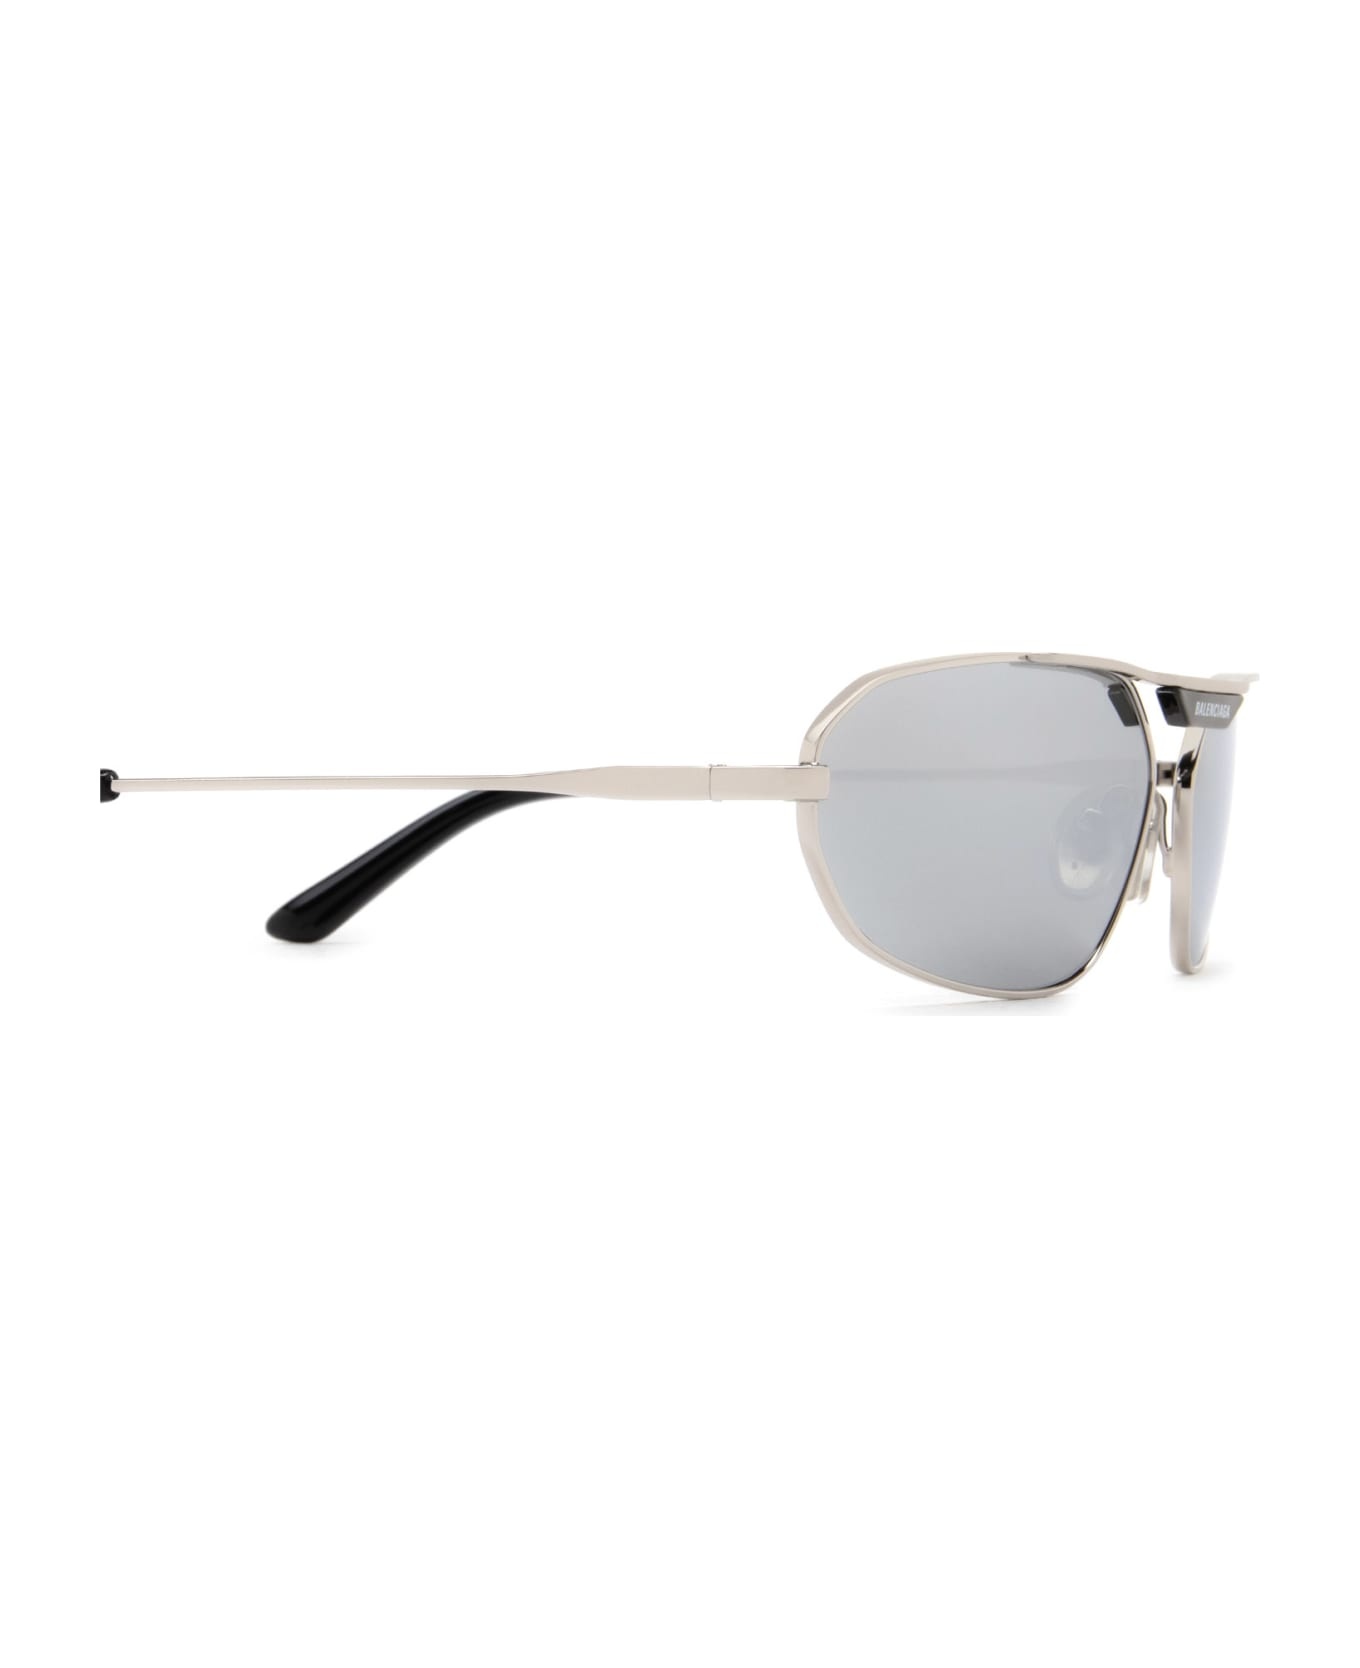 Bb0245s Silver Sunglasses - 3